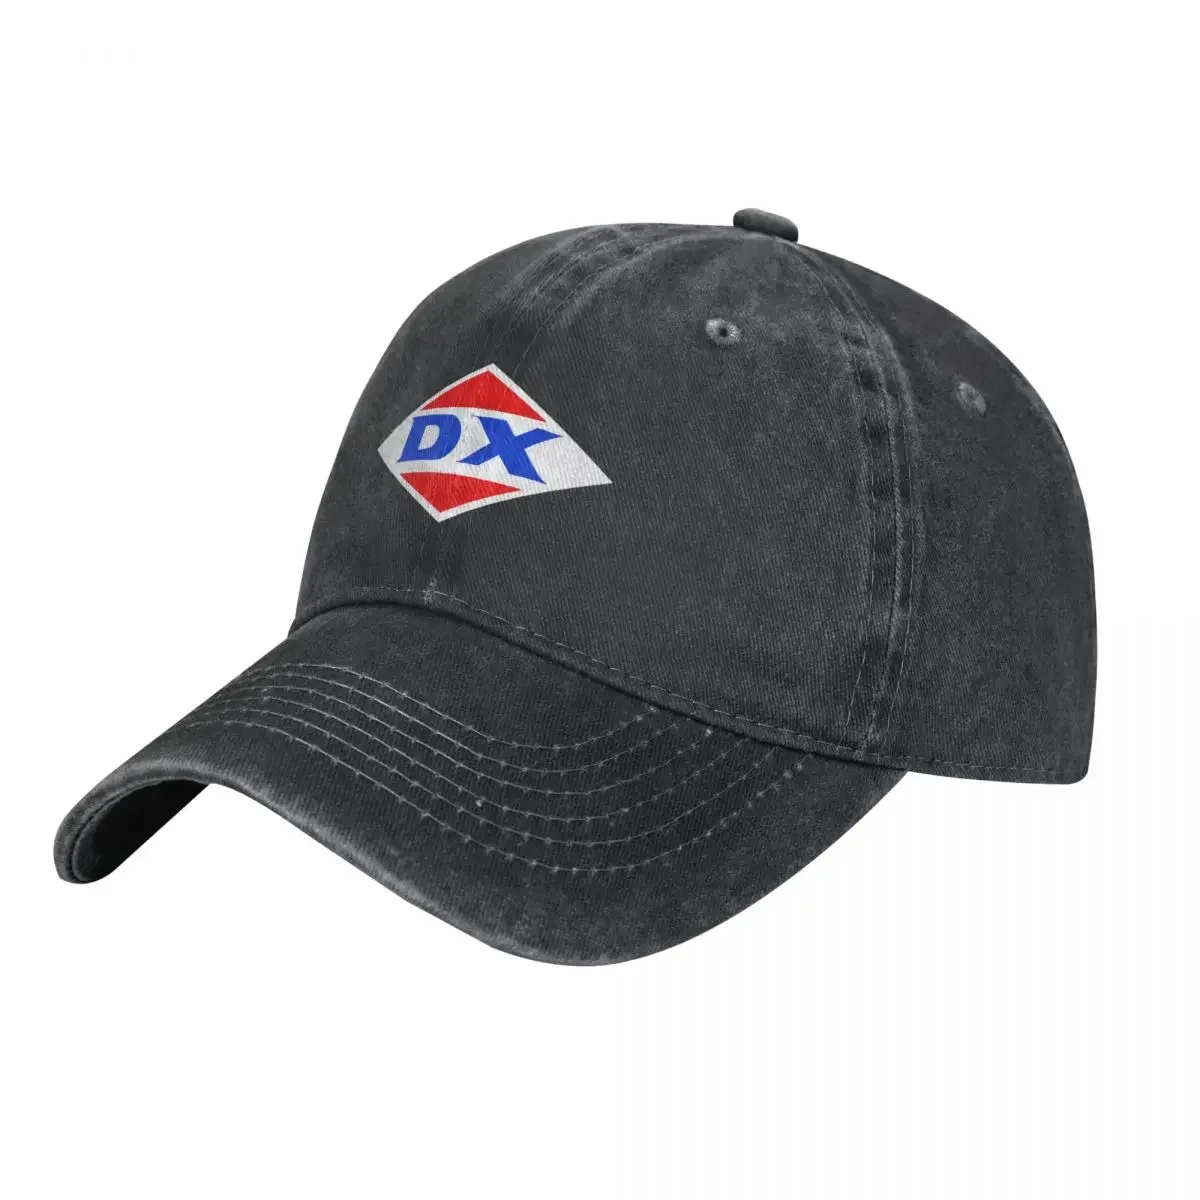 

Ковбойская шляпа с логотипом заправочной станции DX, шляпа для гольфа, дизайнерская шляпа для походов, женская одежда для гольфа большого размера для мужчин